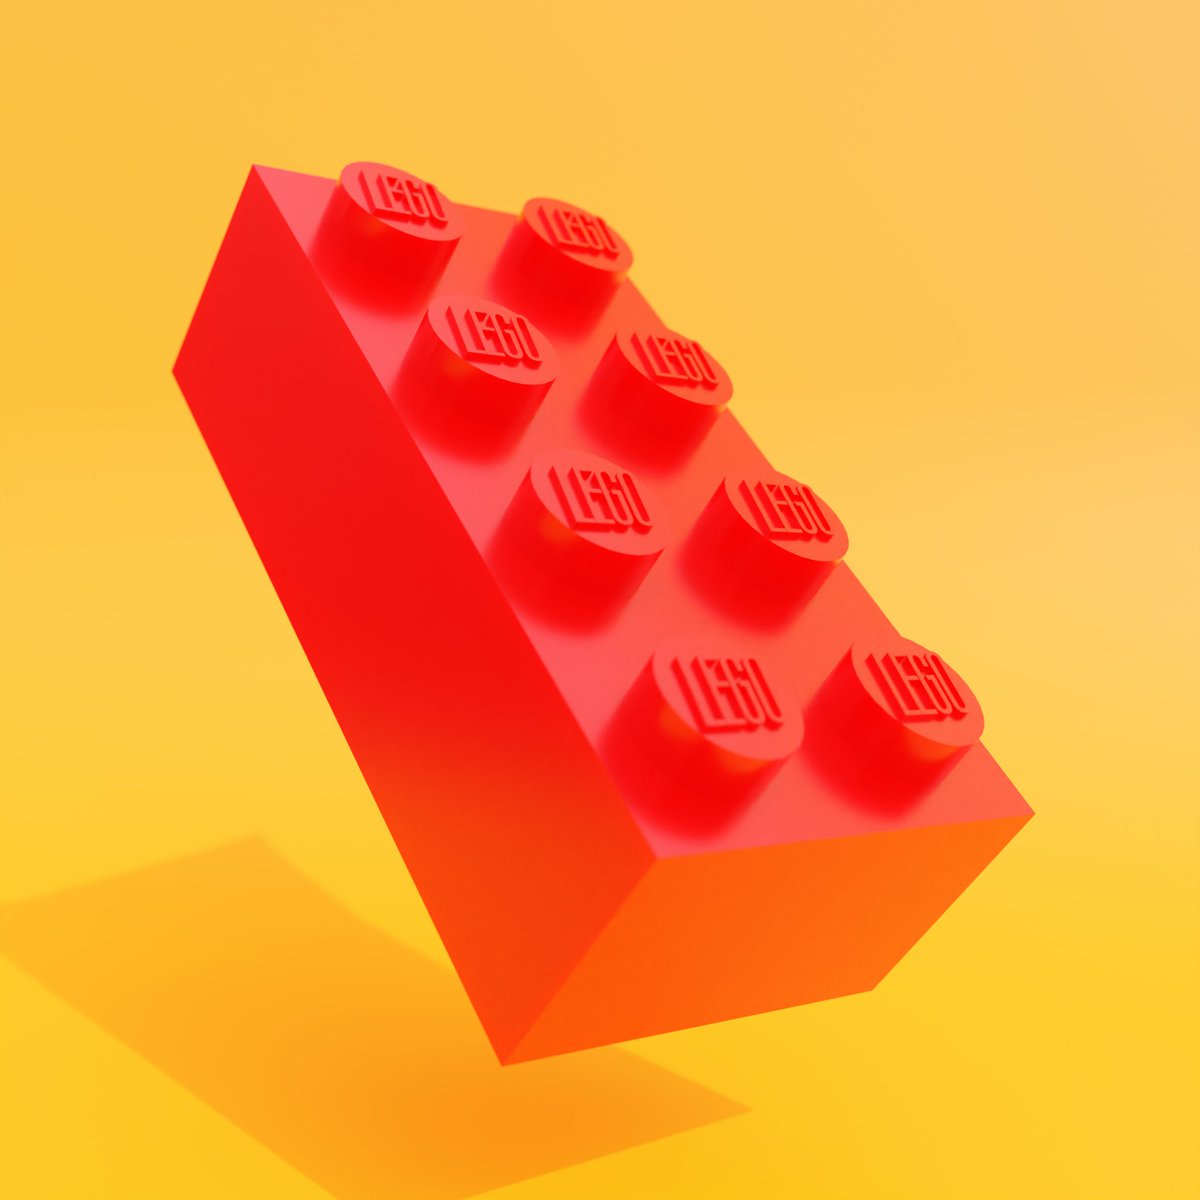 LEGO

#blender #blender3d #b3d #blendercommunity #madewithblender #3dart #3dmodeling #3dmodels #3D #LEGO